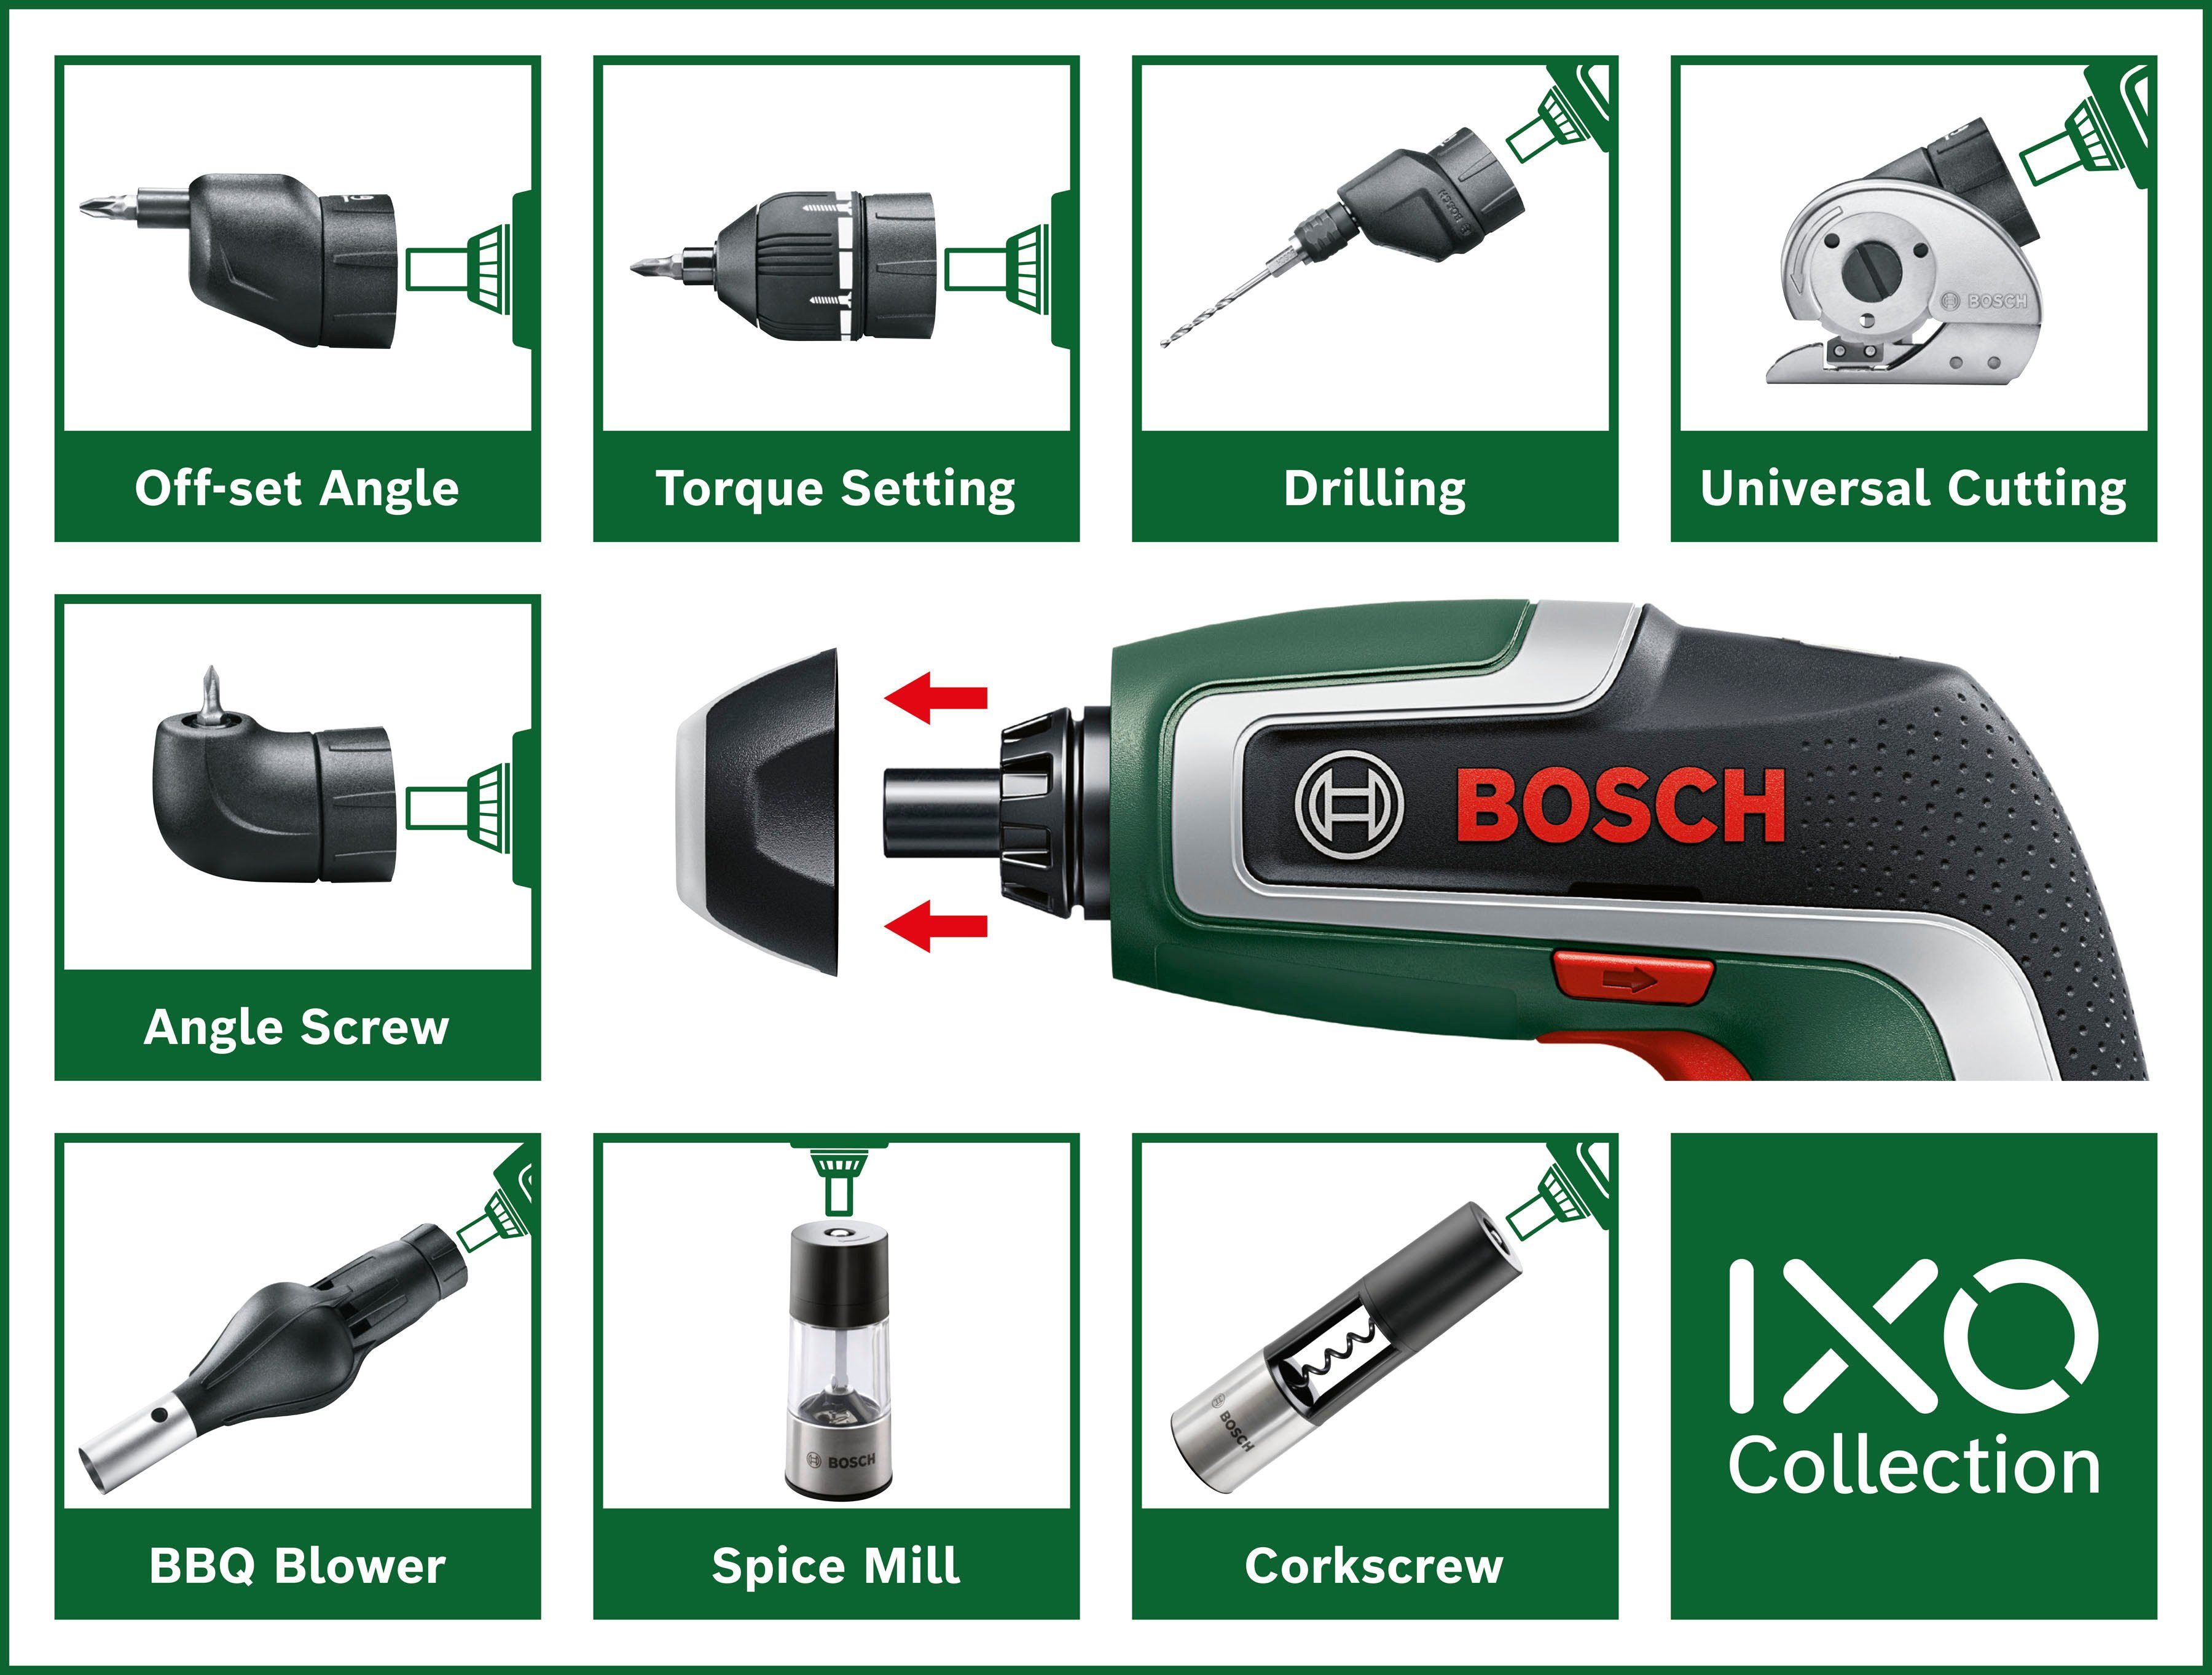 5,5 & 7, 10 Home Standard-Schrauberbits, Garden und Bosch Akku-Schrauber IXO Nm, Aufbewahrungsbox mit Bit-Halter